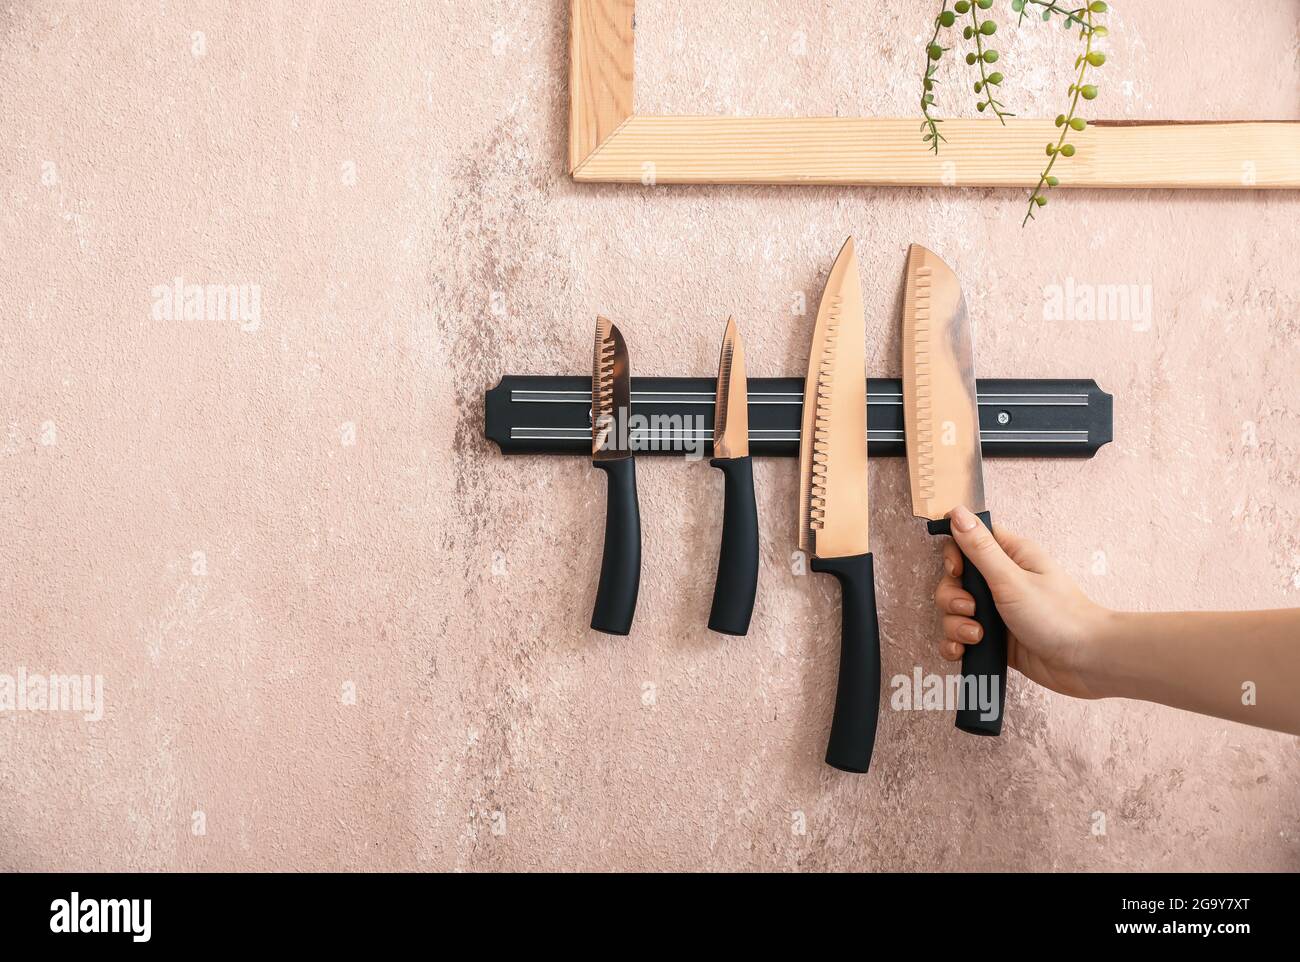 Femme et support magnétique avec couteaux accrochés au mur de couleur Banque D'Images